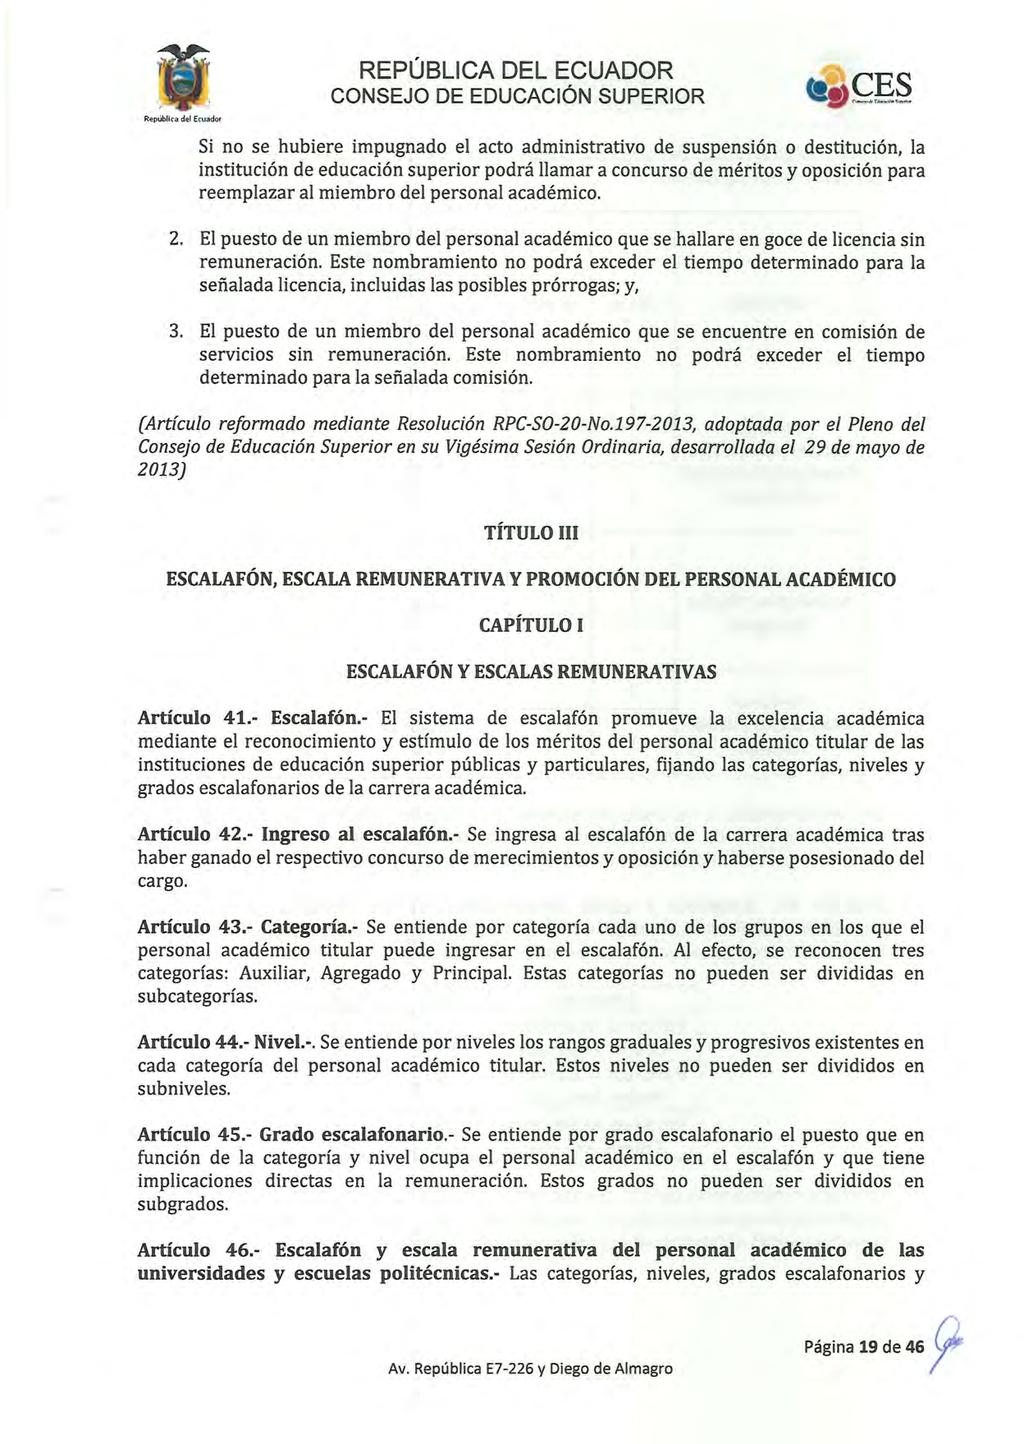 Republlc3 del Ecuador Si no se hubiere impugnado el acto administrativo de suspensión o destitución, la institución de educación superior podrá llamar a concurso de méritos y oposición para